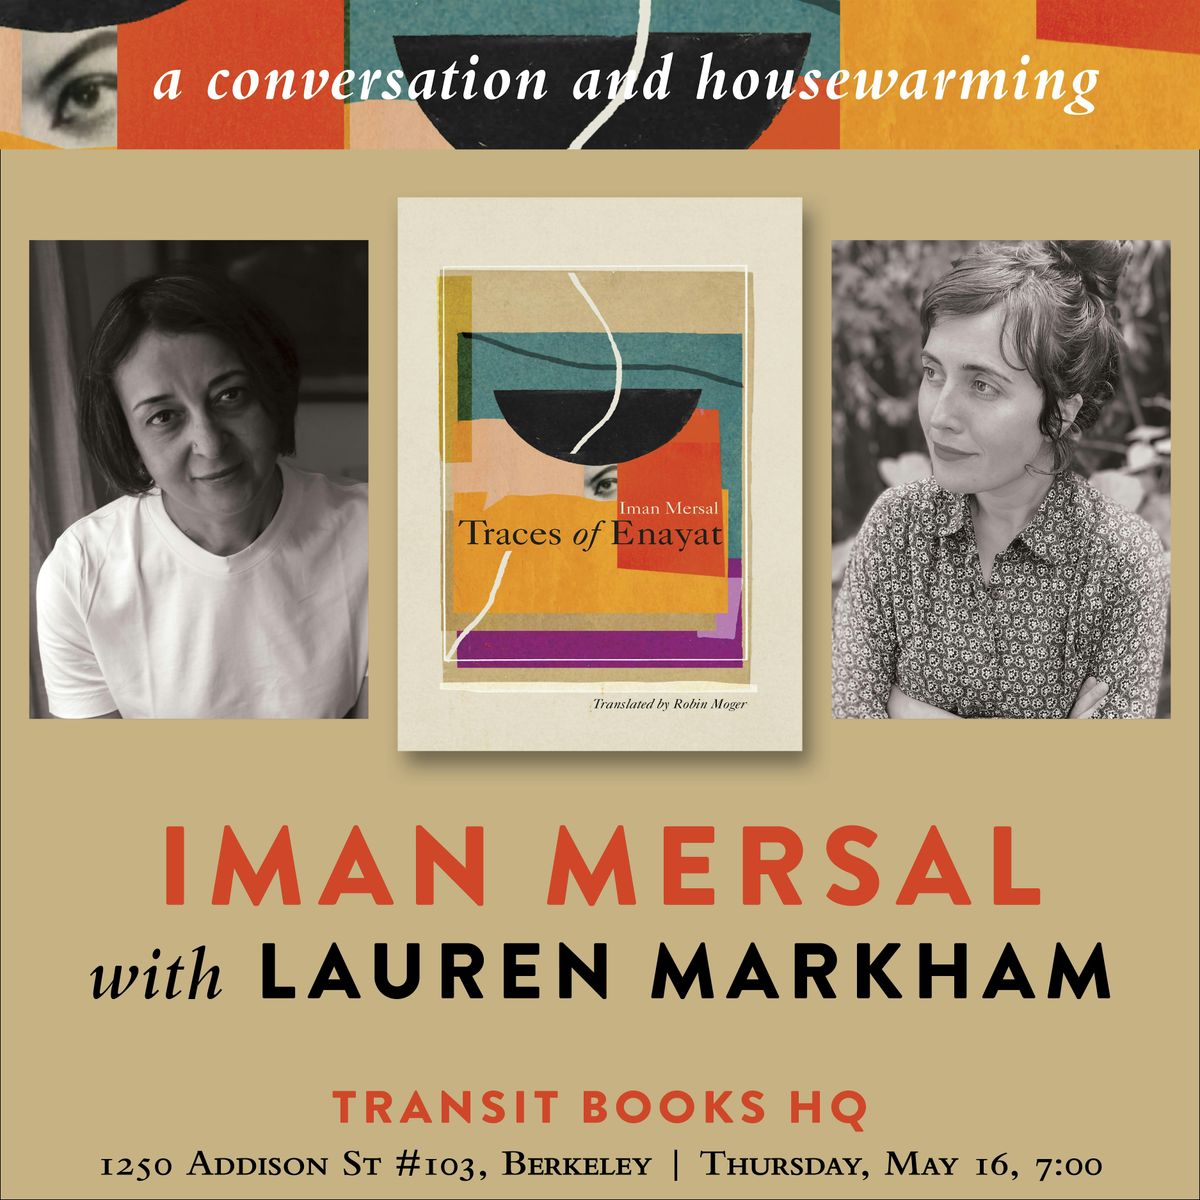 Iman Mersal & Lauren Markham: A Conversation and Housewarming